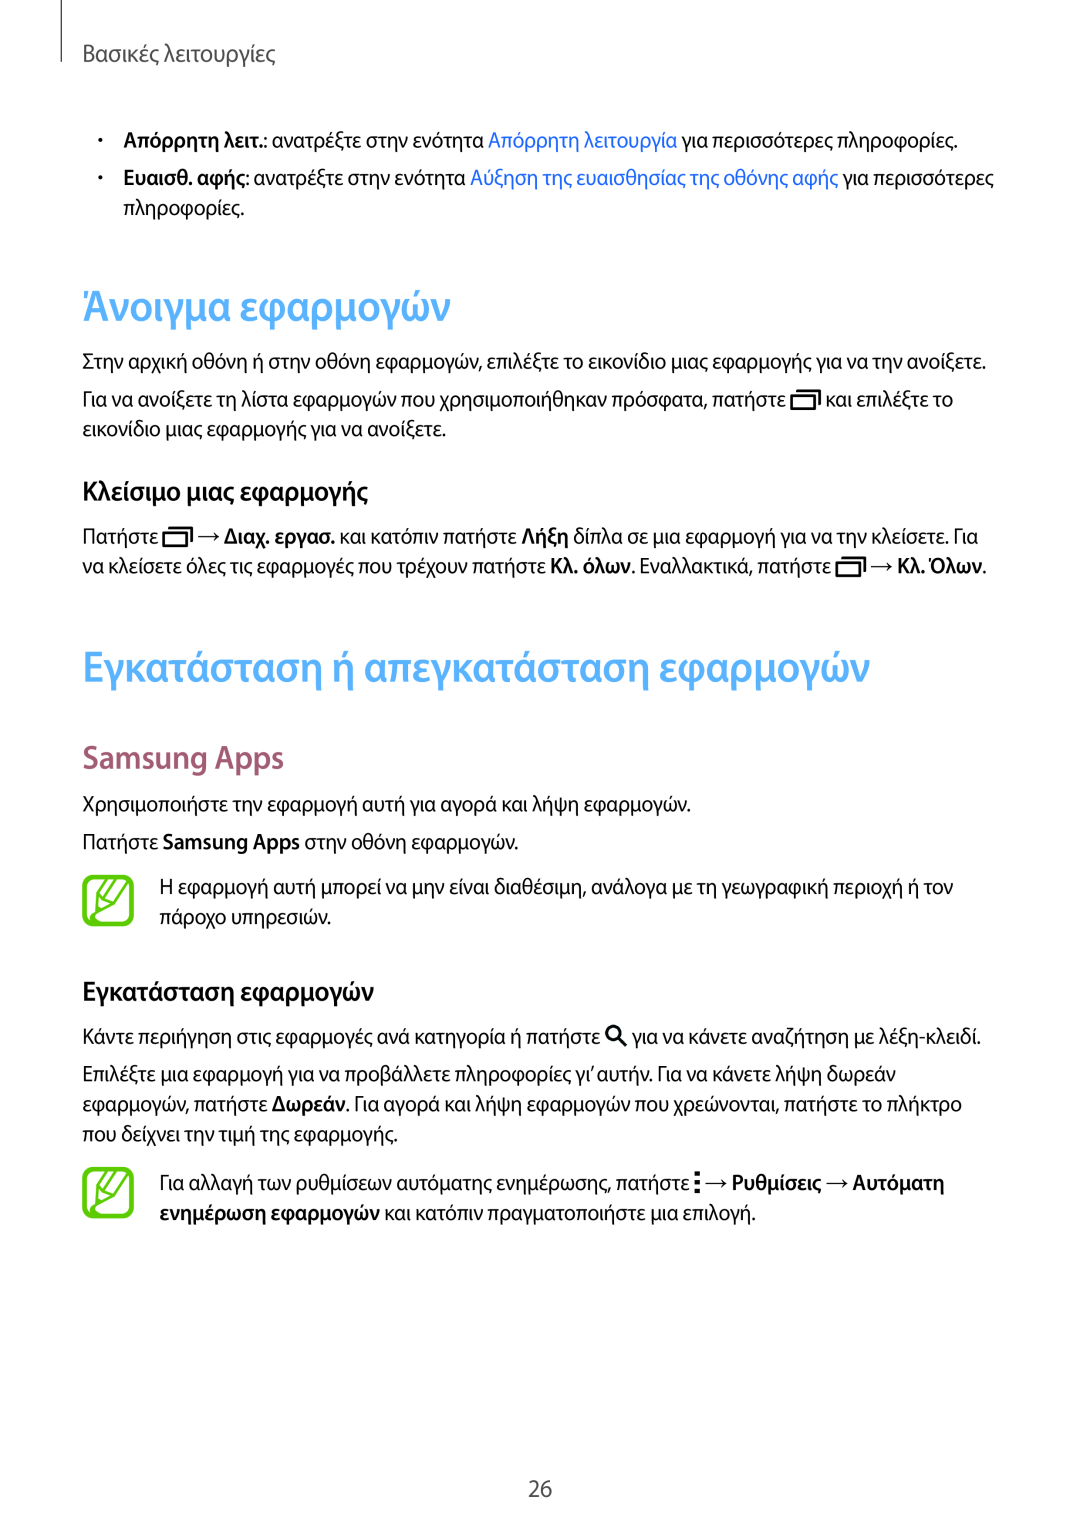 Samsung SM-T805NTSAEUR Άνοιγμα εφαρμογών, Εγκατάσταση ή απεγκατάσταση εφαρμογών, Samsung Apps, Κλείσιμο μιας εφαρμογής 